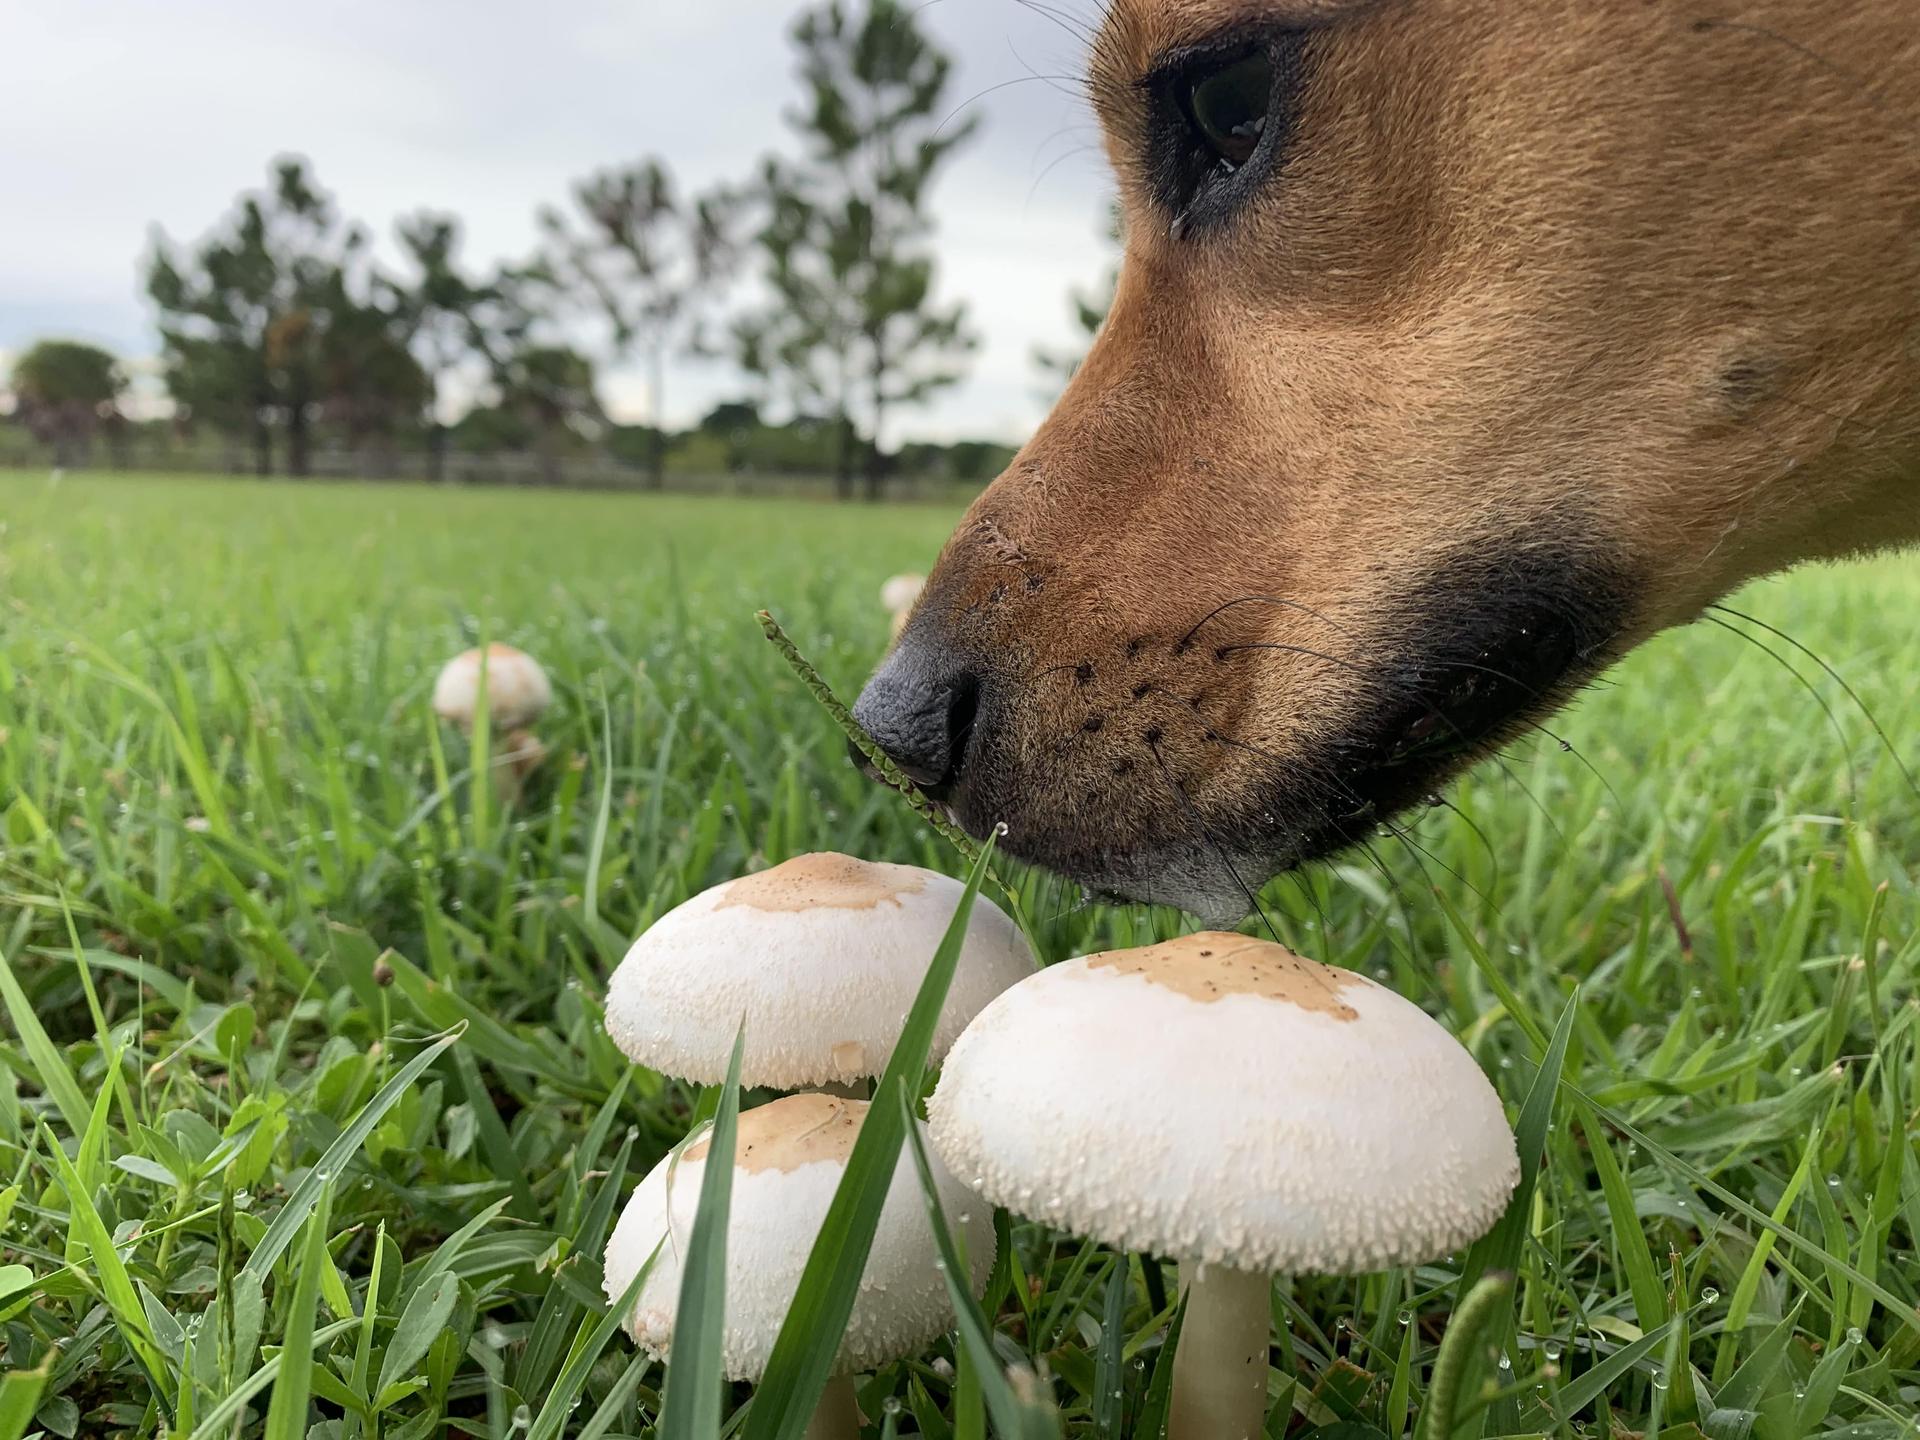 Dog Smelling Mushrooms